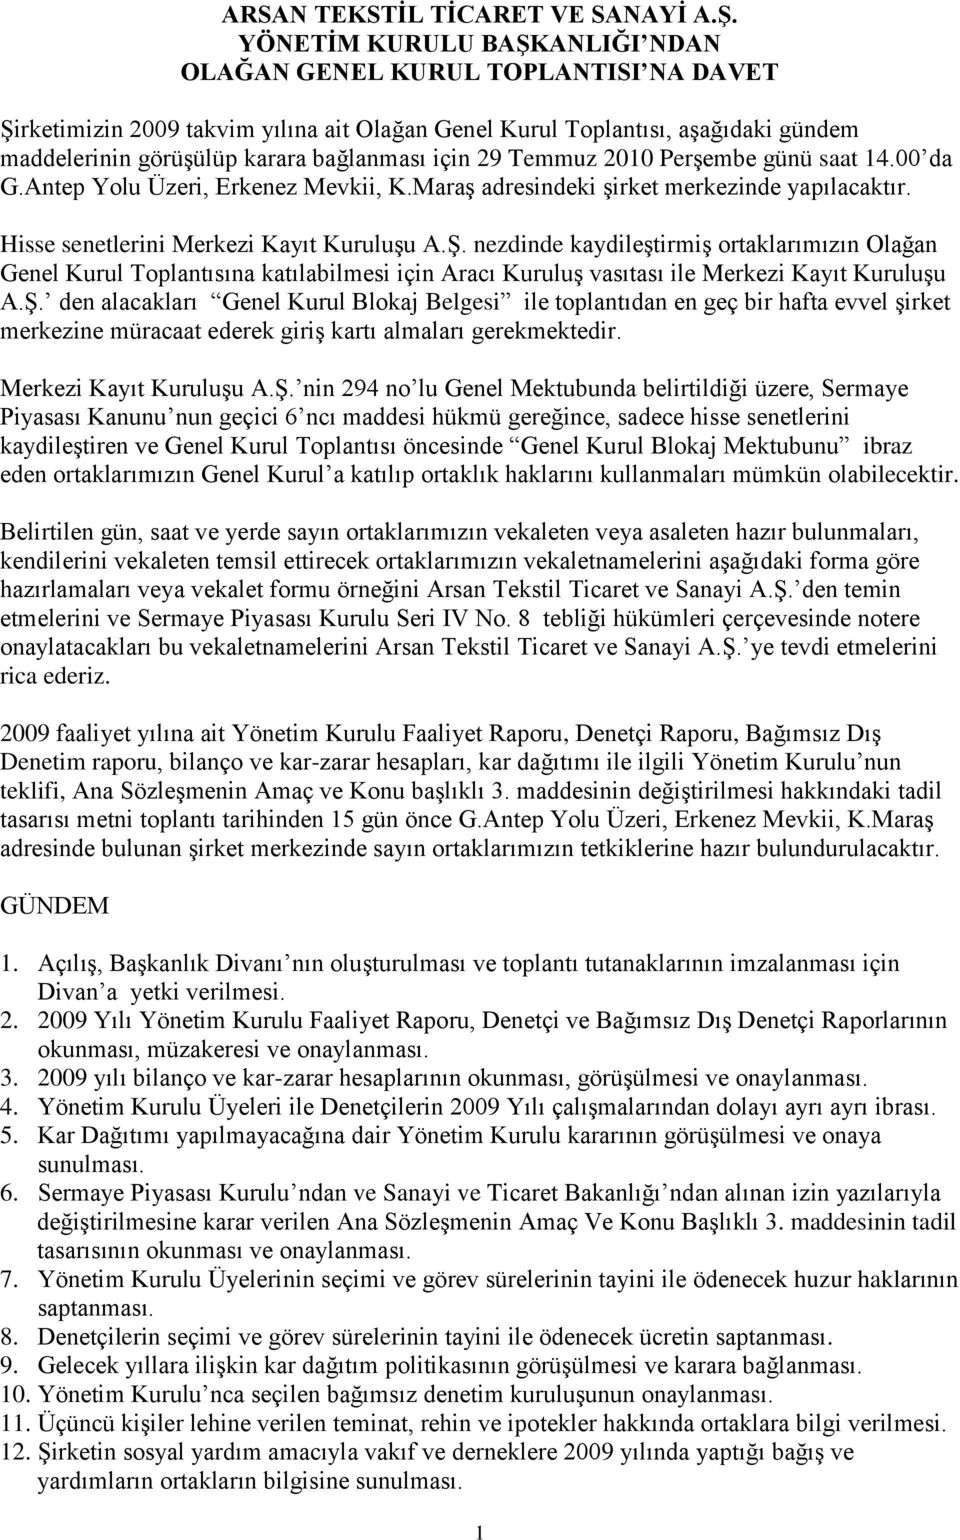 29 Temmuz 2010 Perşembe günü saat 14.00 da G.Antep Yolu Üzeri, Erkenez Mevkii, K.Maraş adresindeki şirket merkezinde yapılacaktır. Hisse senetlerini Merkezi Kayıt Kuruluşu A.Ş.